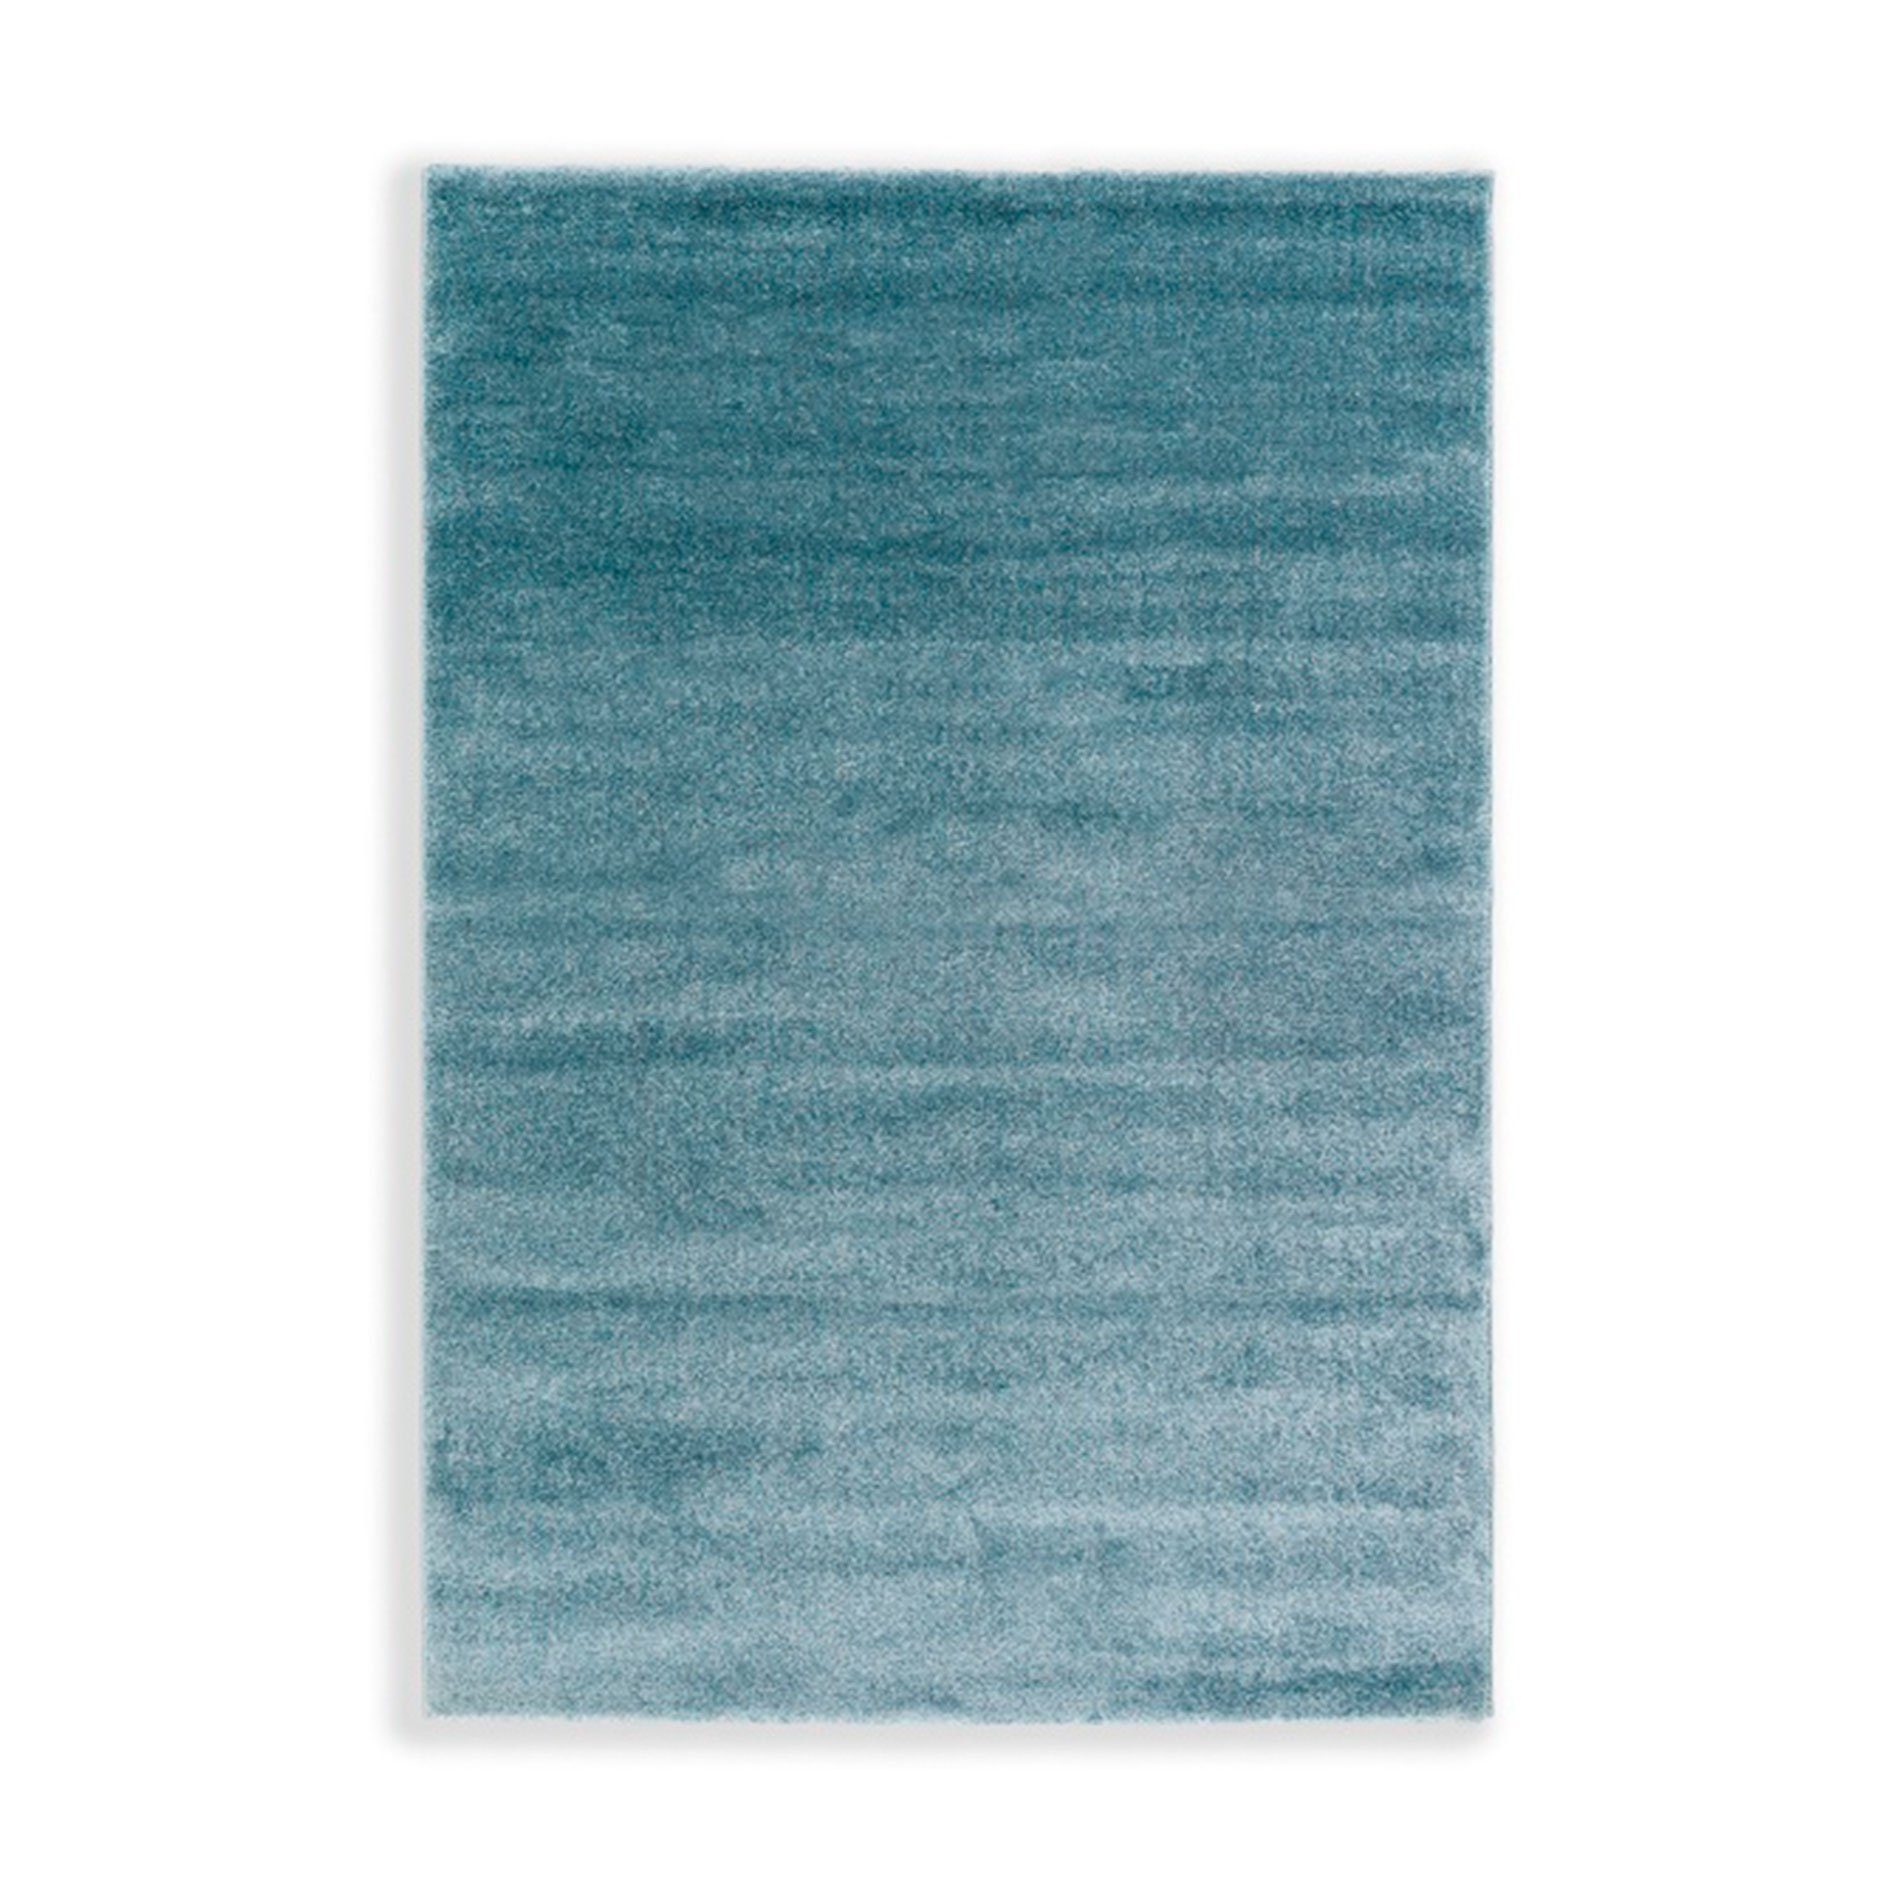 Astra „Pure“ Teppich in der Farbe Türkis in frontaler Ansicht.